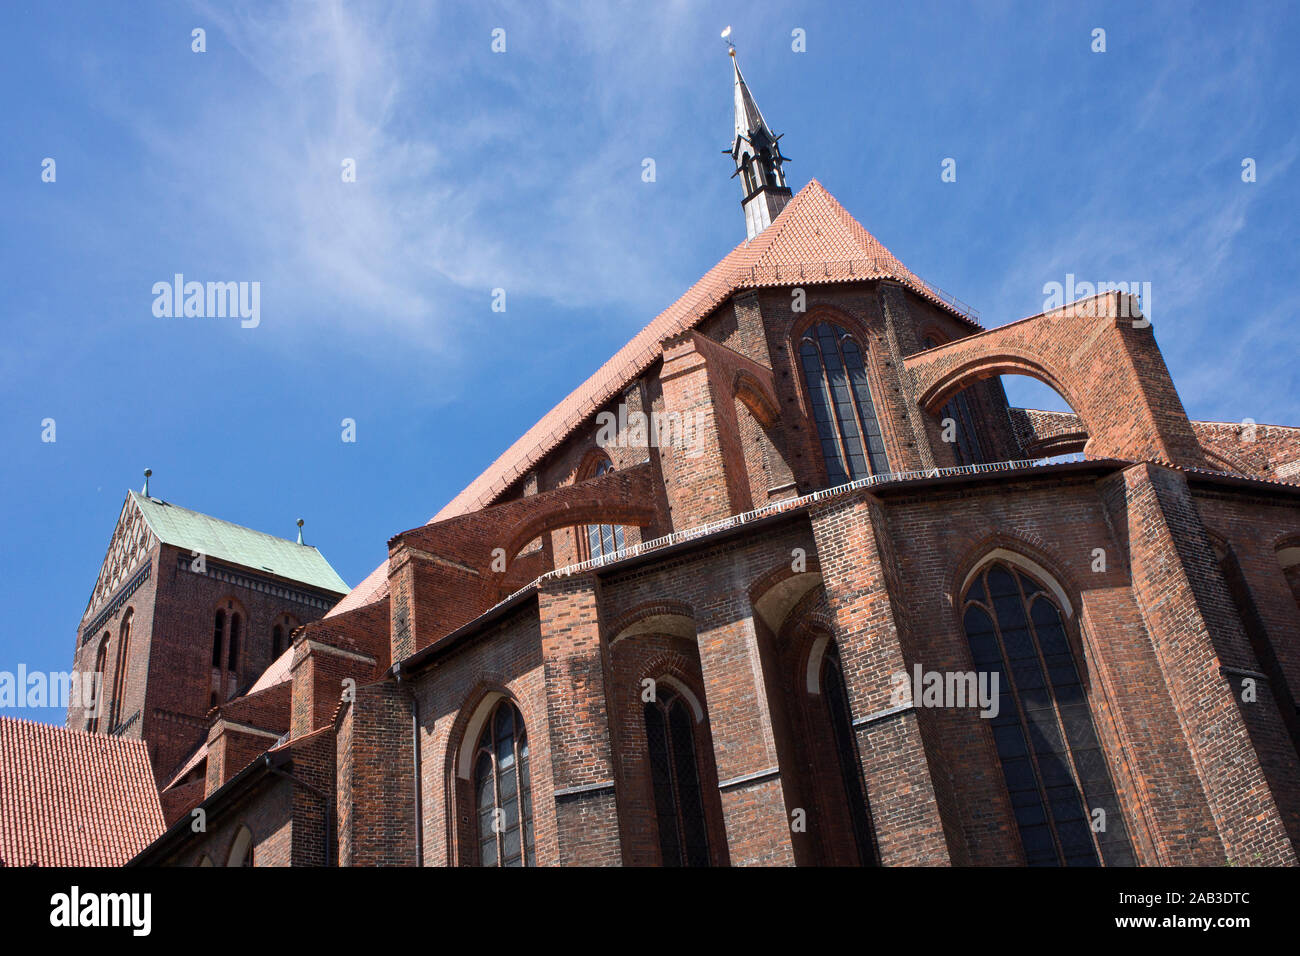 Die St.-Nikolai-Kirche in der Hansestadt Wismar |The St. Nicholas Church in the Hanseatic City of Wismar| Stock Photo